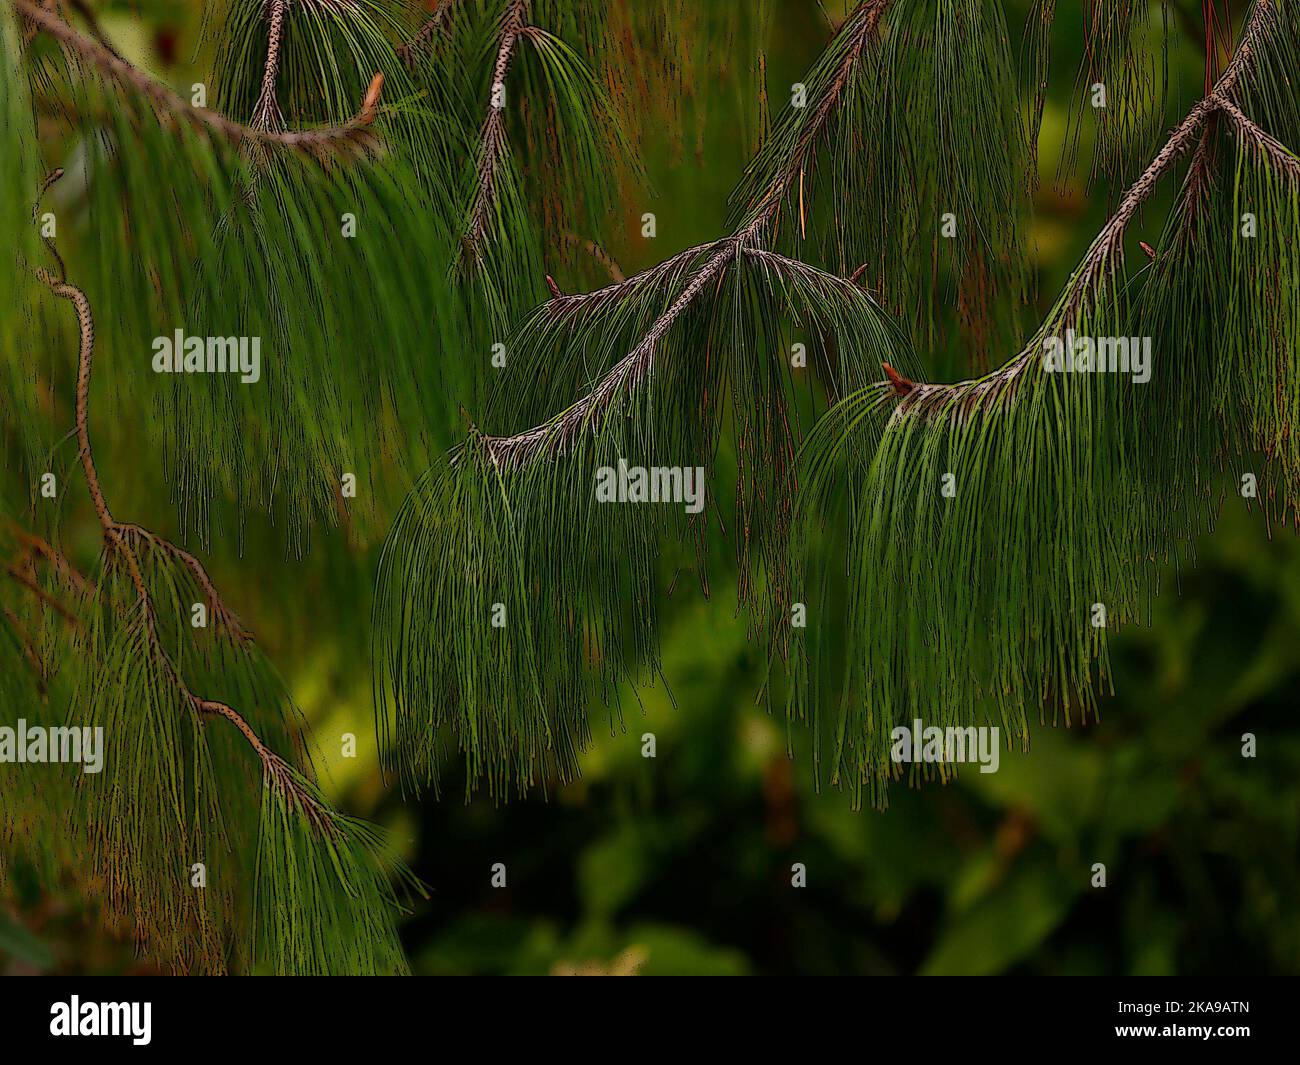 Illustrative Nahaufnahme der grünen nachlaufenden Kiefernnadeln des immergrünen Gartenbaums Pinus patula. Stockfoto